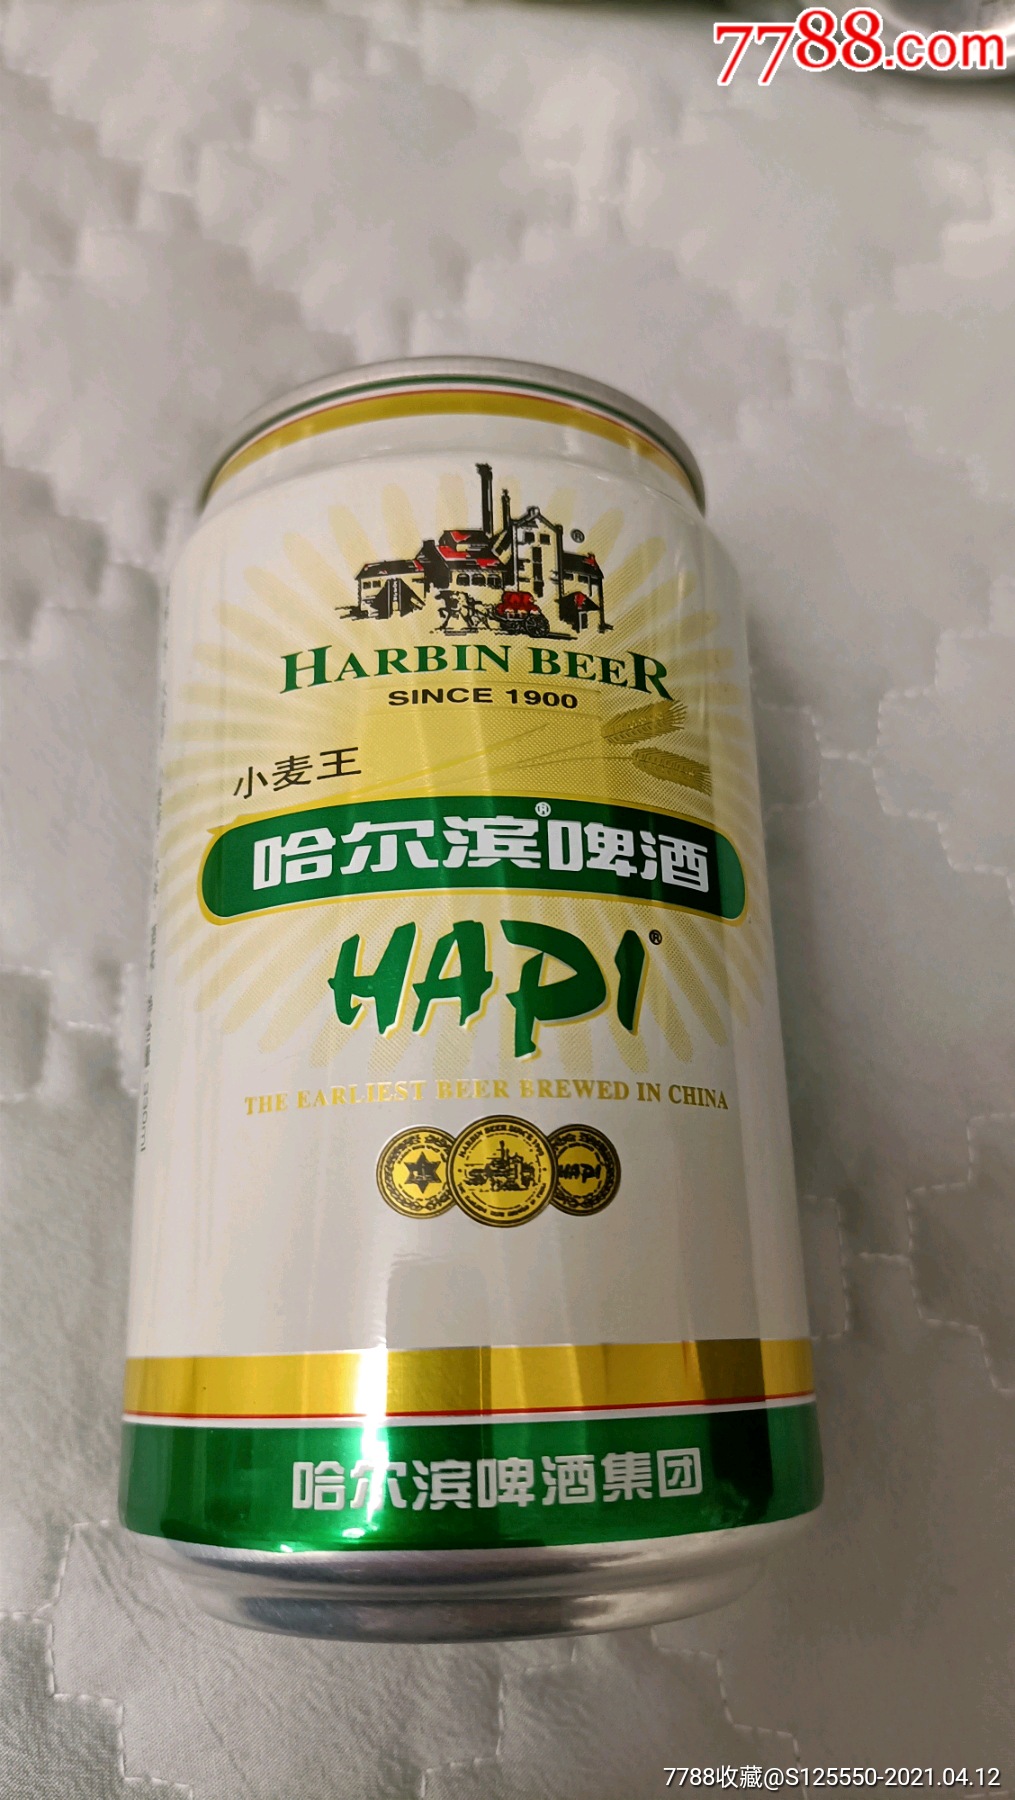 2002年的哈尔滨啤酒罐